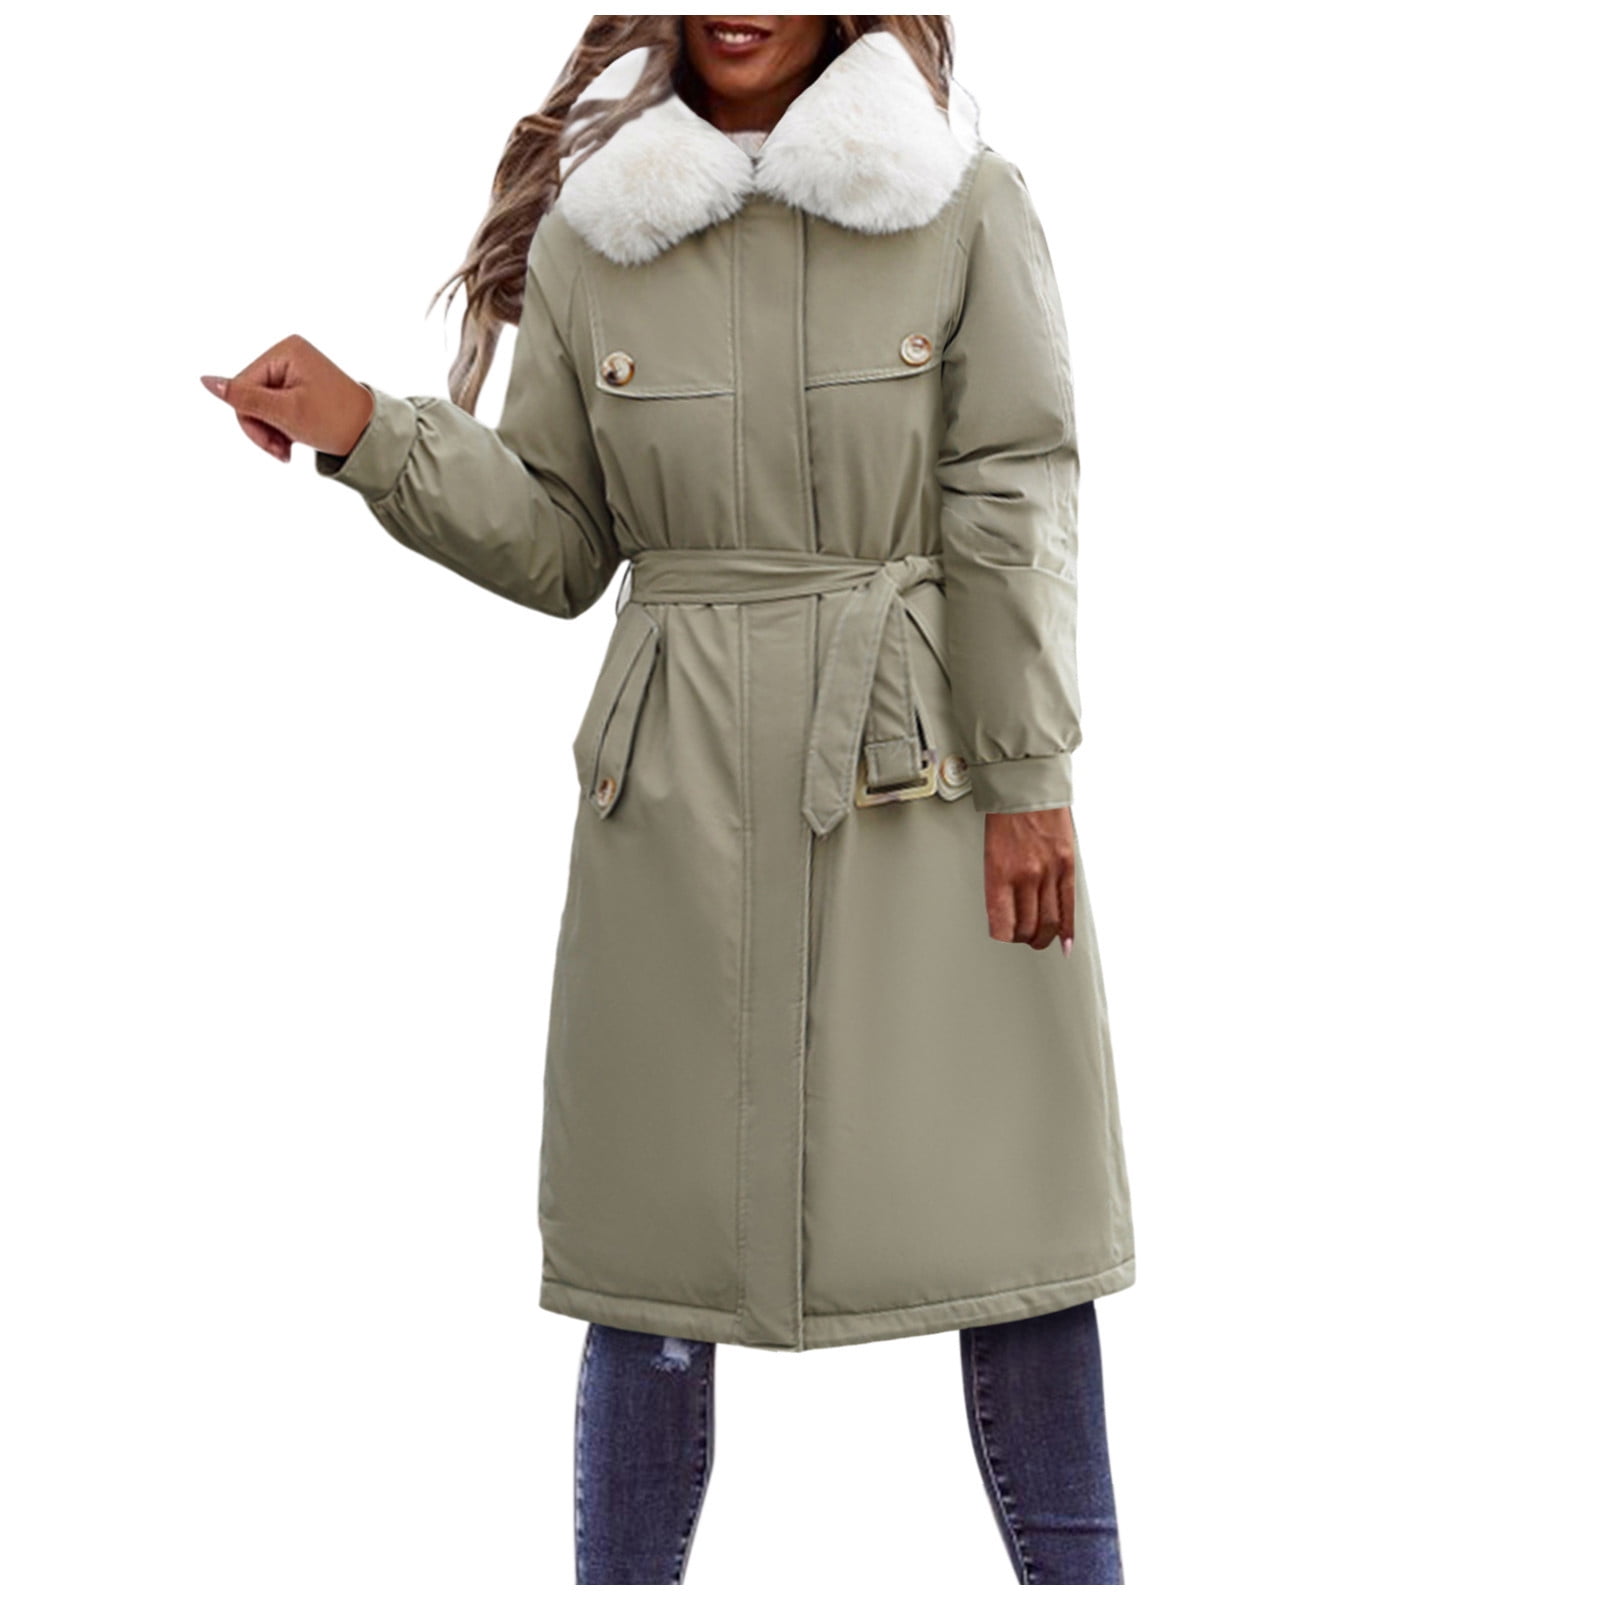 Women Coats Winter Casual Warm Long Sleeve Lapels Fleece Parka Outwear Overcoat Outercoat Jacket 